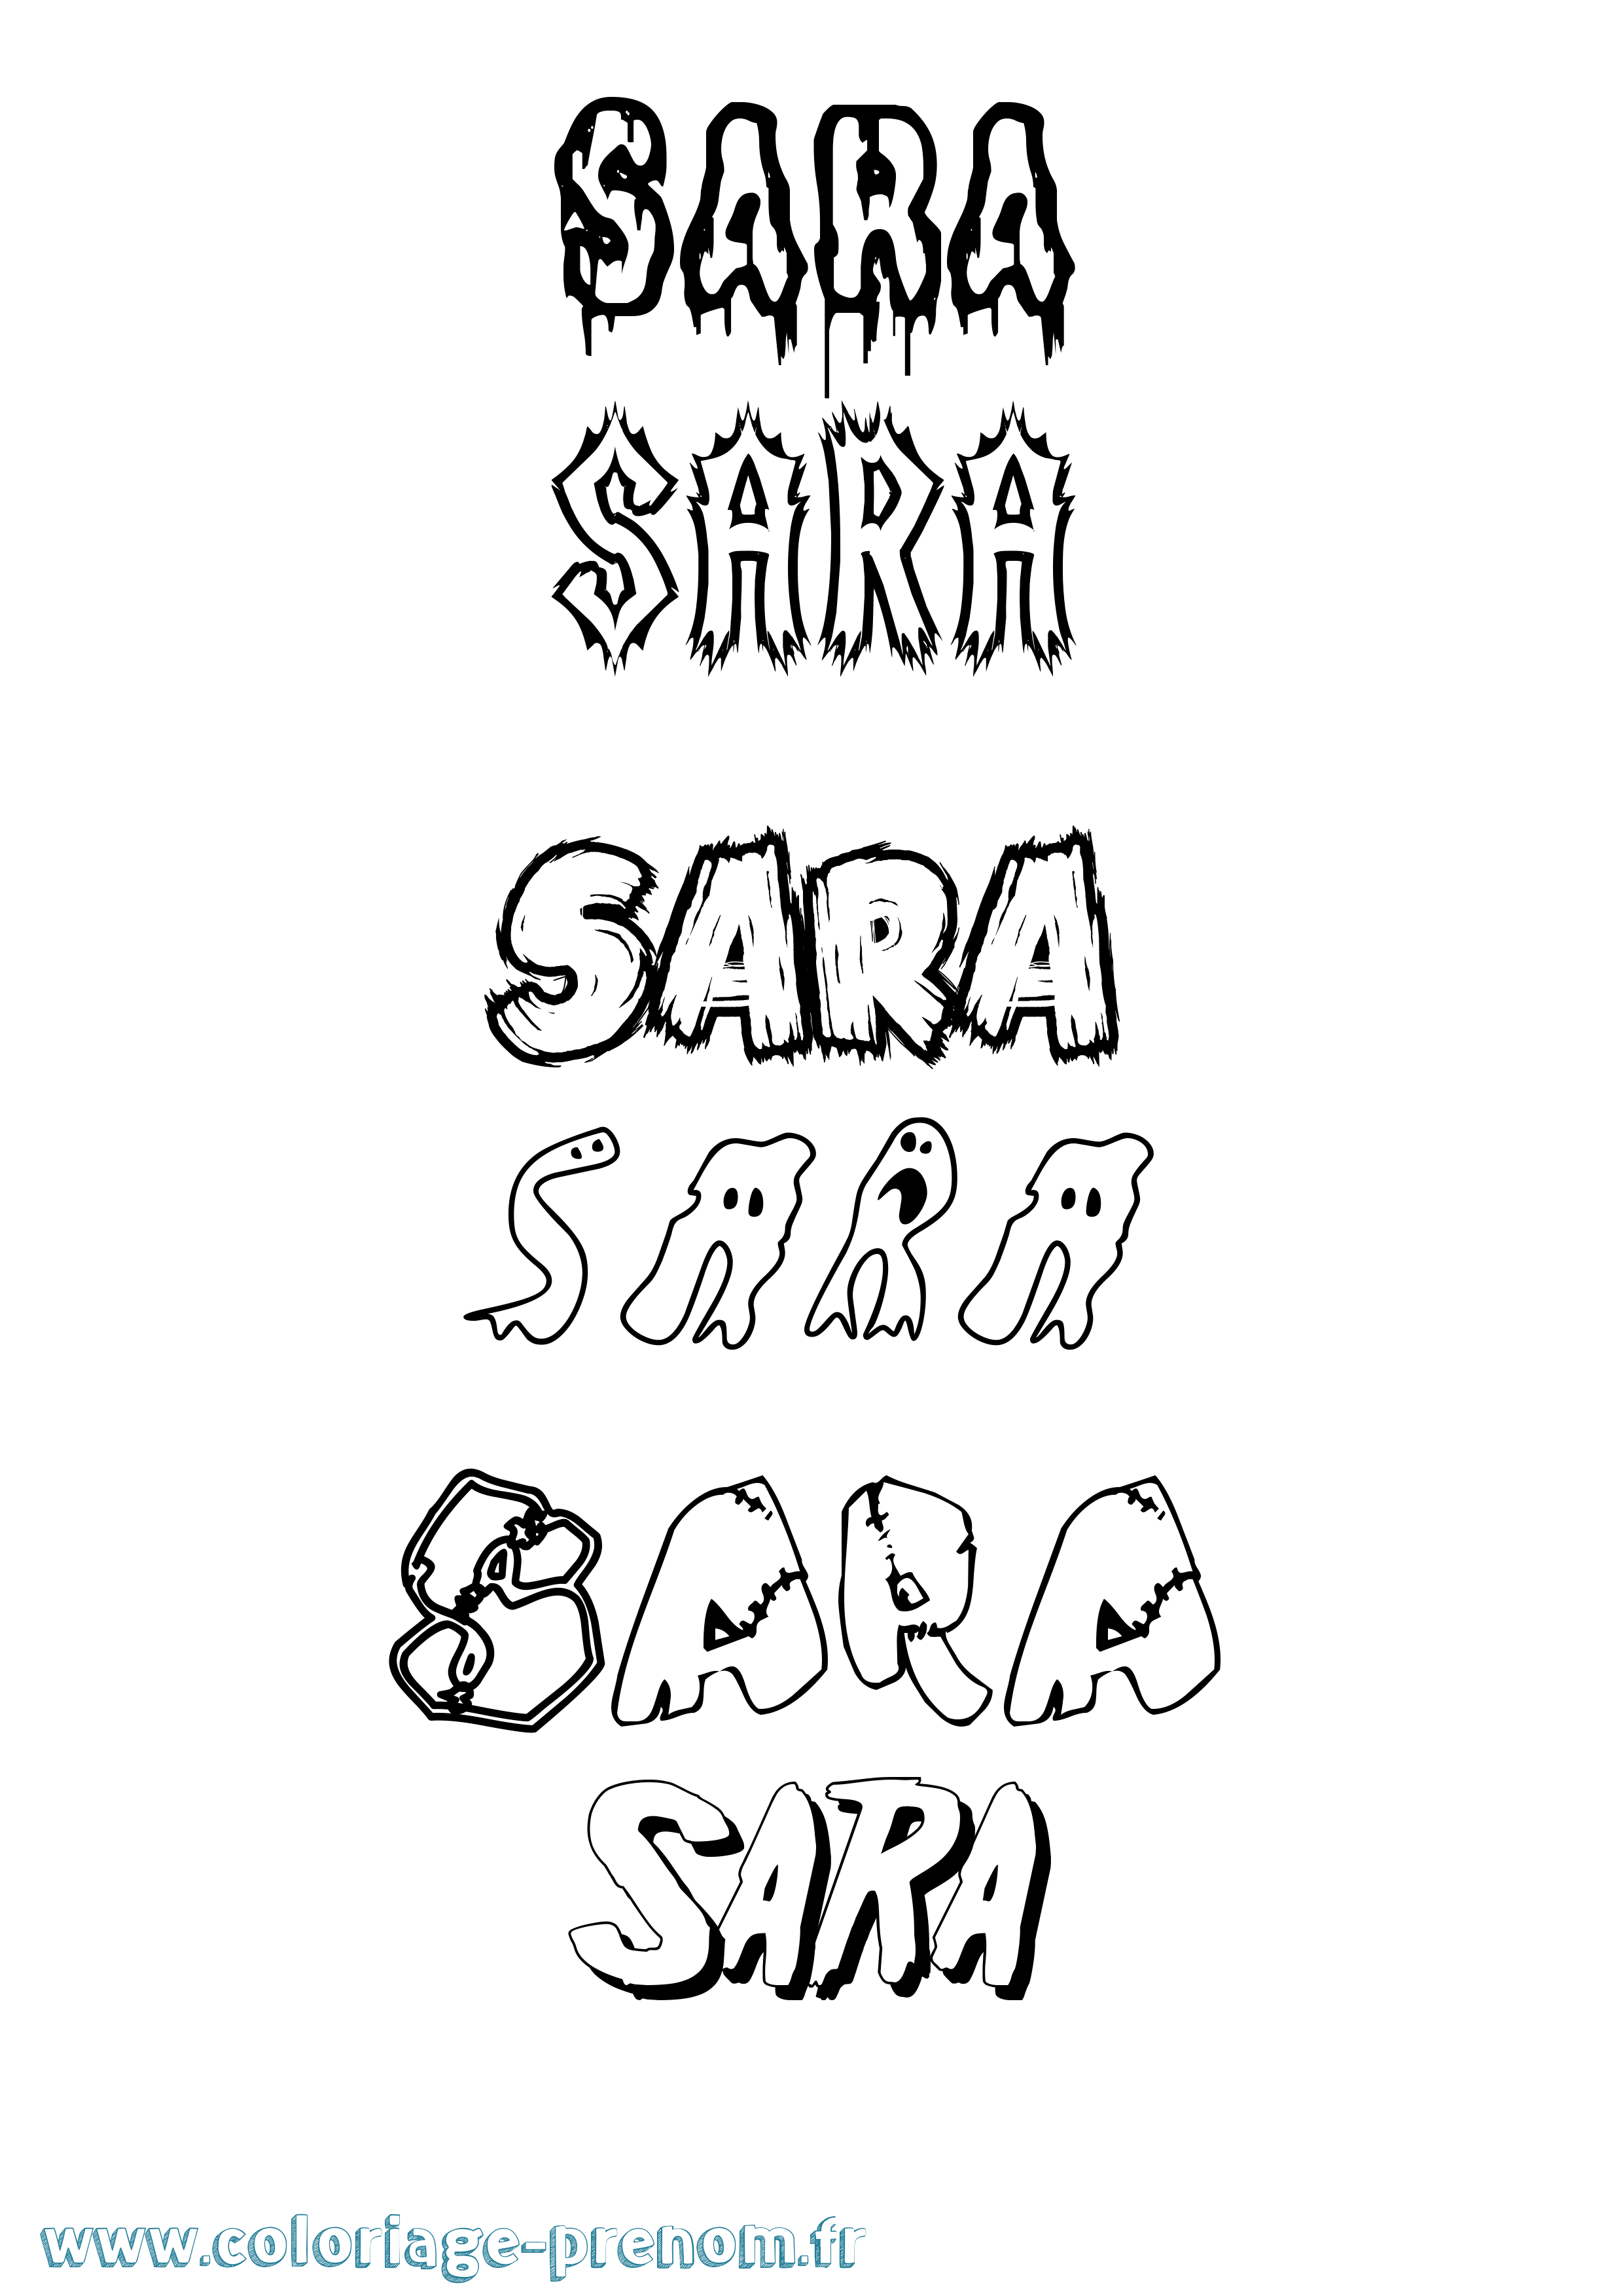 Coloriage prénom Sara Frisson